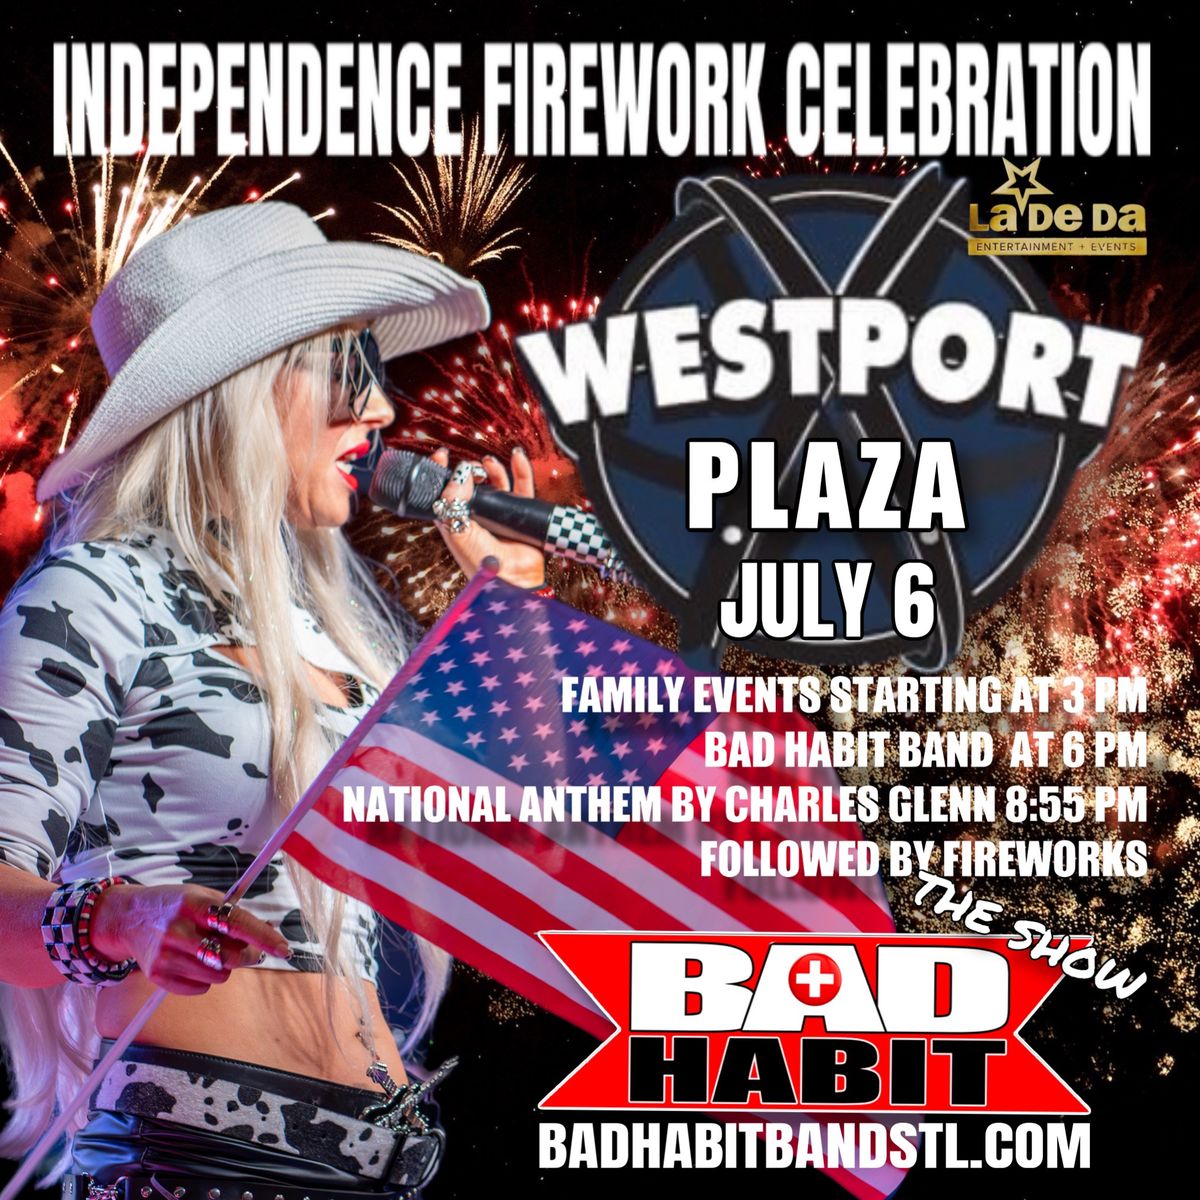 Westport Plaza Independence Firework Celebration 